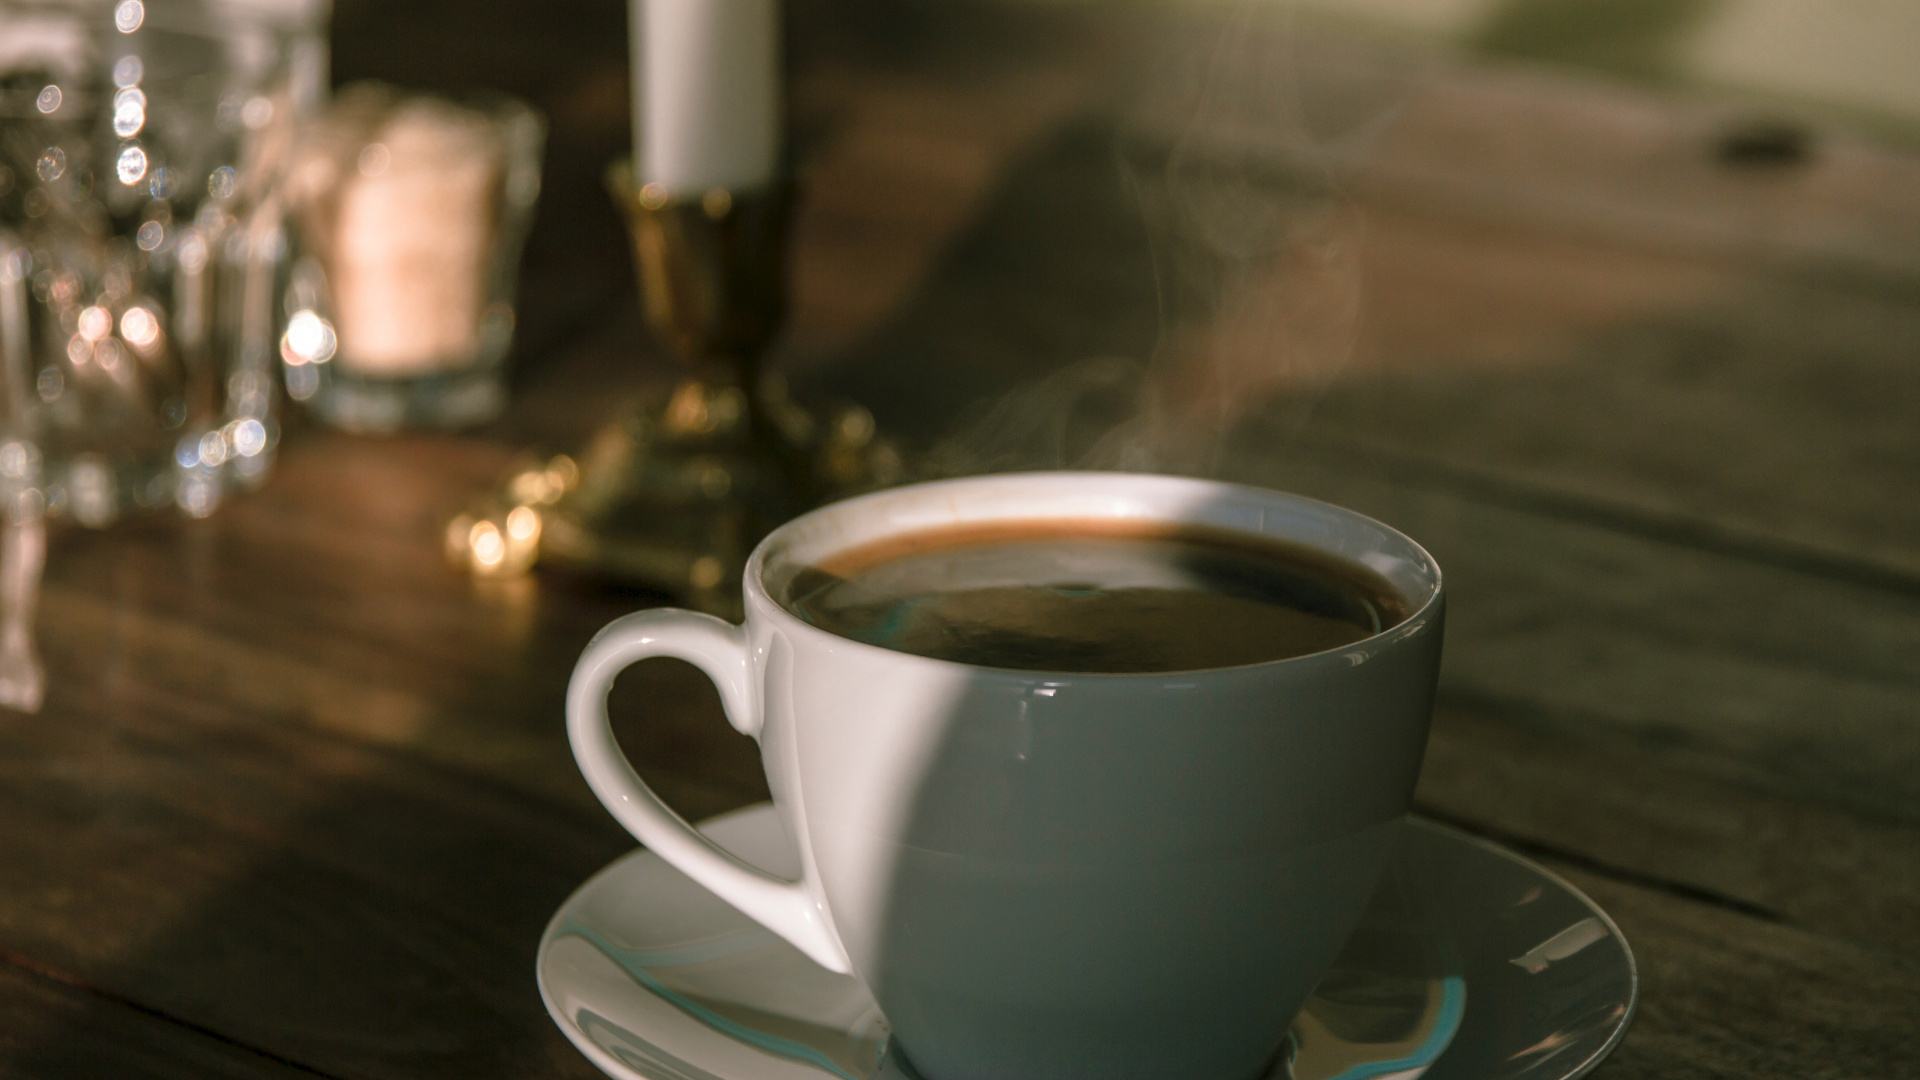 卡布奇诺咖啡, 咖啡杯, 器皿, 古巴咖啡, 蒲公英咖啡 壁纸 1920x1080 允许